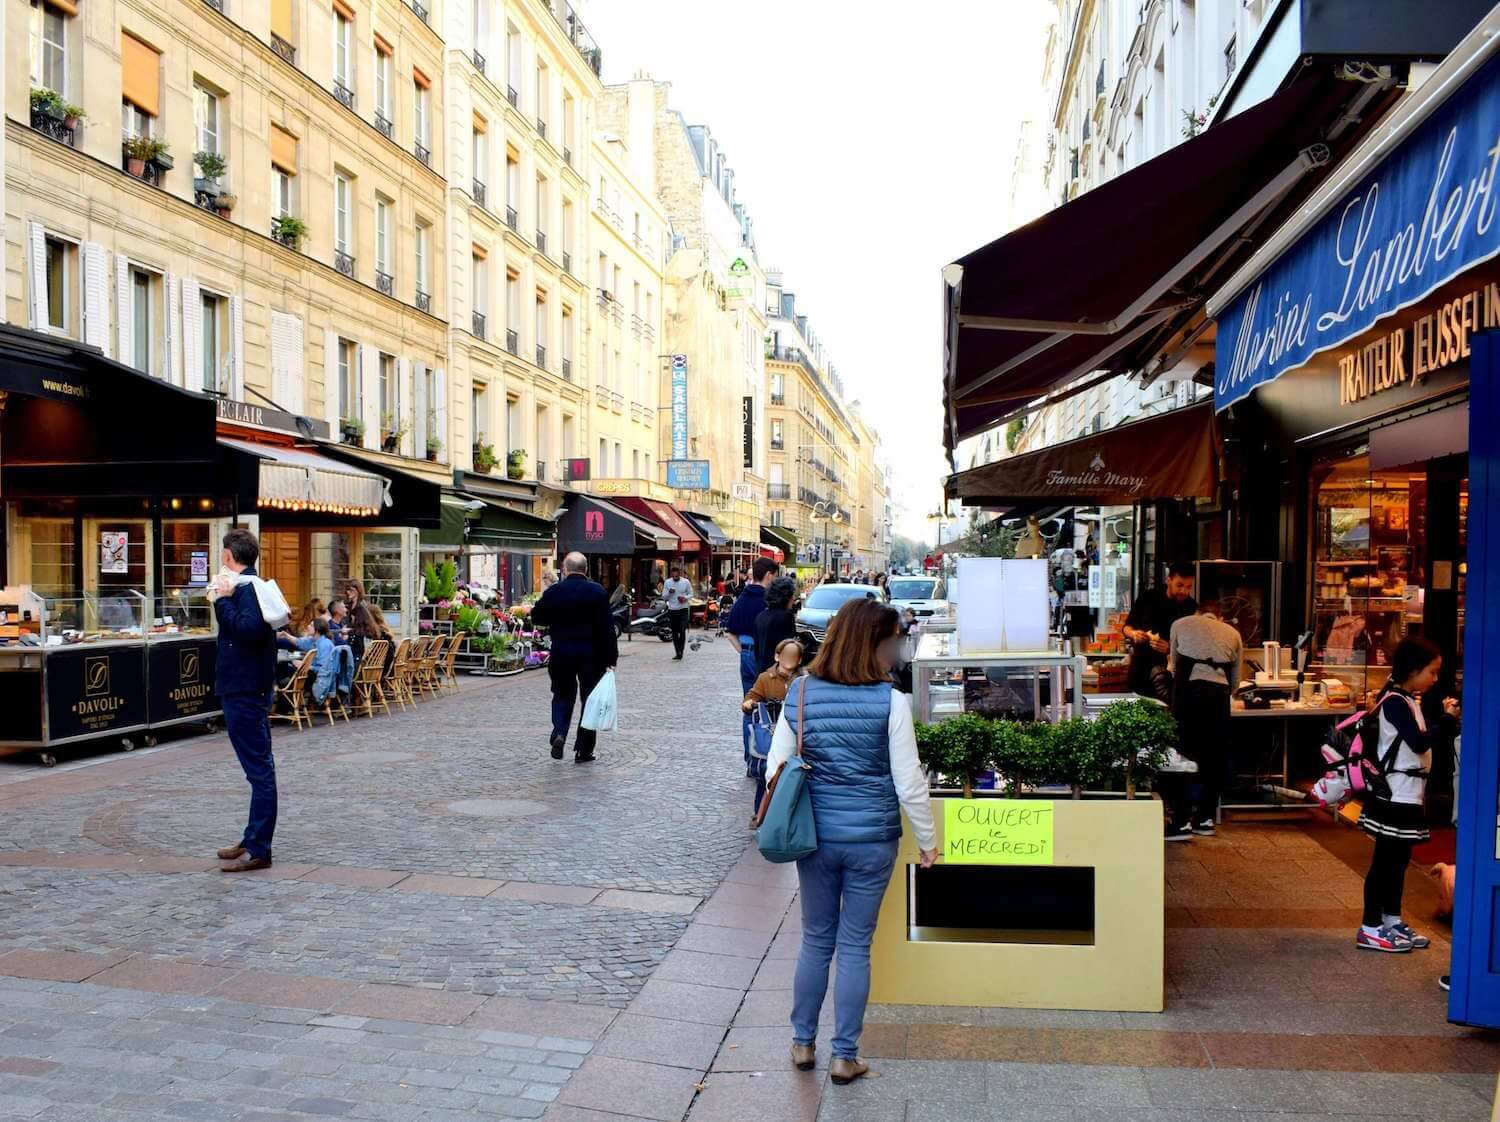 Rue Cler Market Street